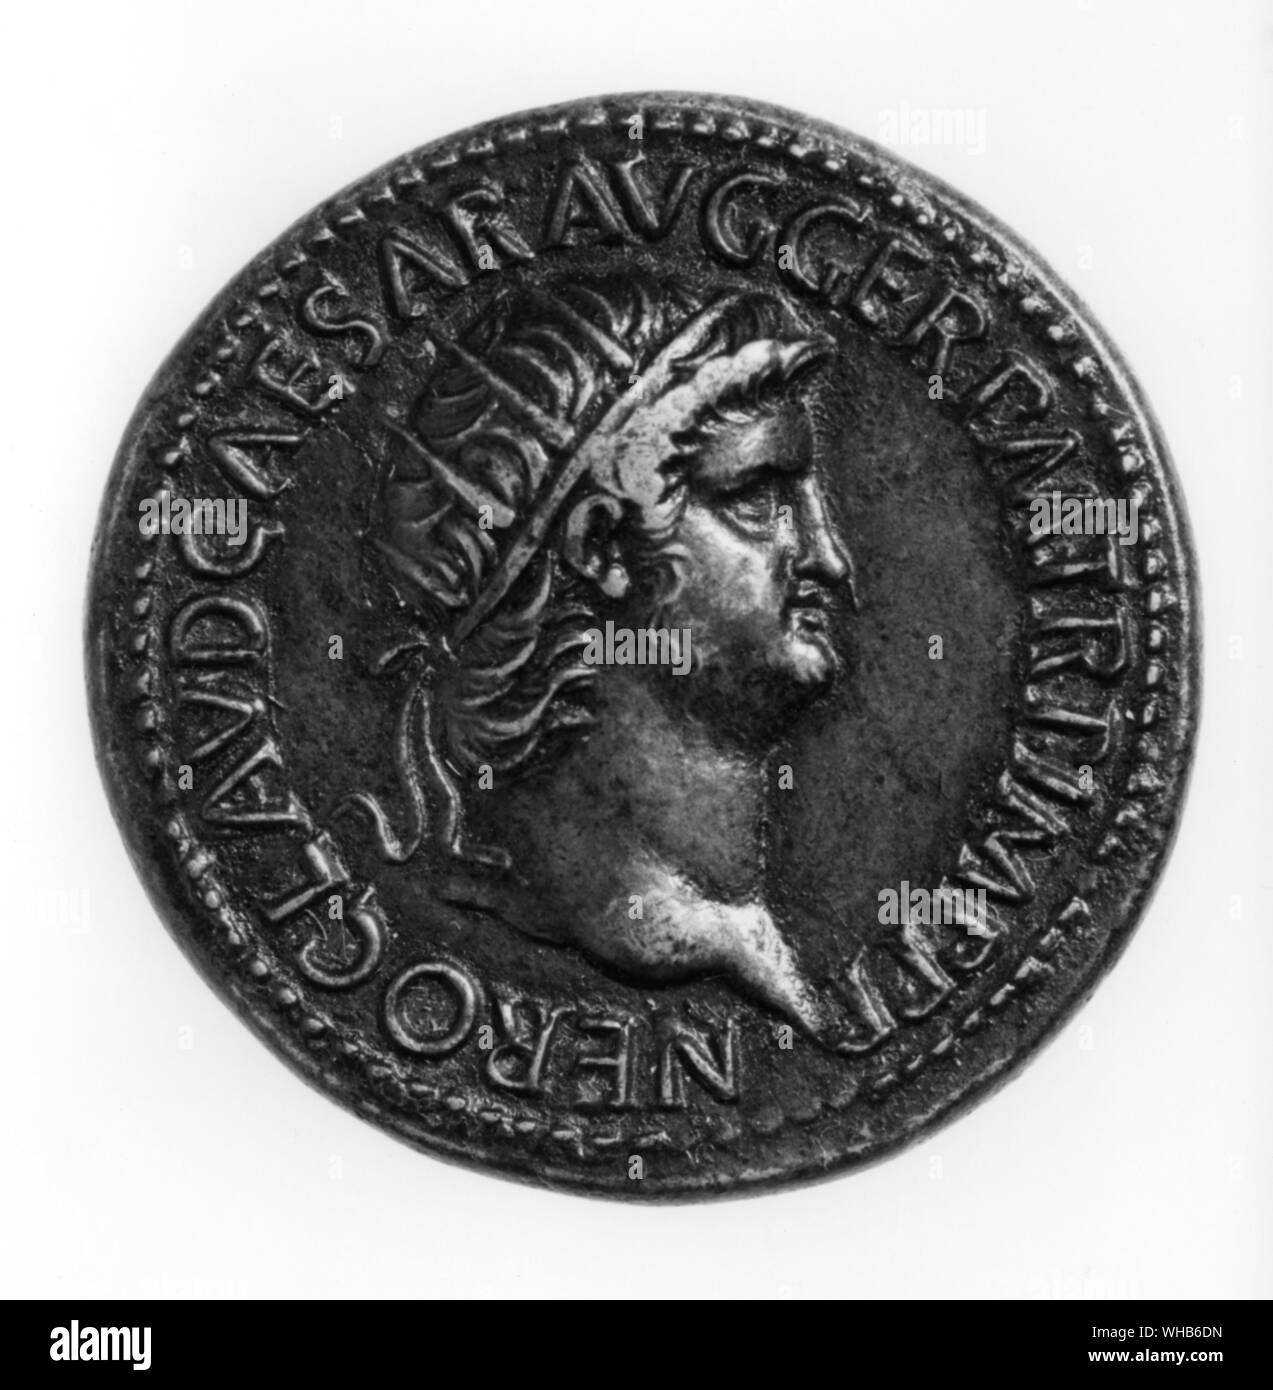 Münze von Nero C.50 - Vorderseite - Nero Claudius Caesar Augustus Germanicus (15. Dezember, 37 Juni 9, 68), geb. Lucius Domitius Ahenobarbus, auch Nero Claudius Caesar Drusus Germanicus genannt wurde, war die fünfte und letzte Römische Kaiser der Patrizier. Stockfoto